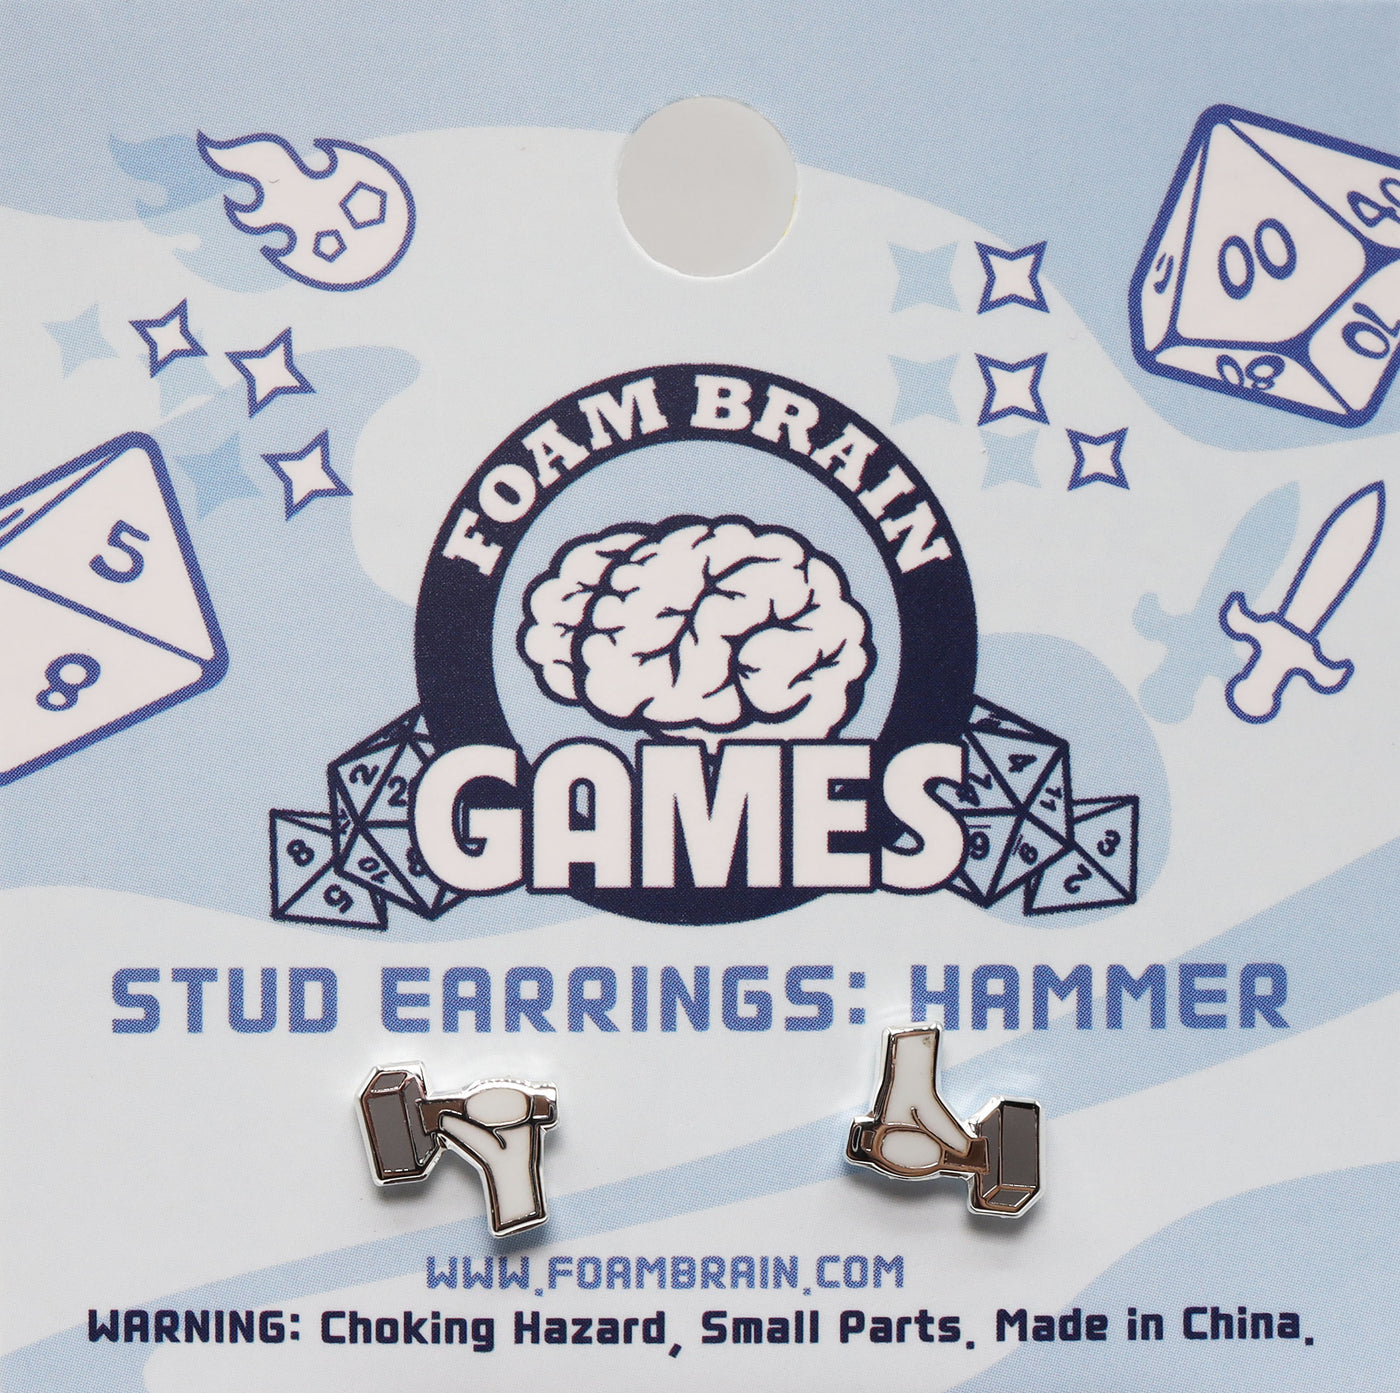 Stud Earrings: Hammer Jewelry Foam Brain Games